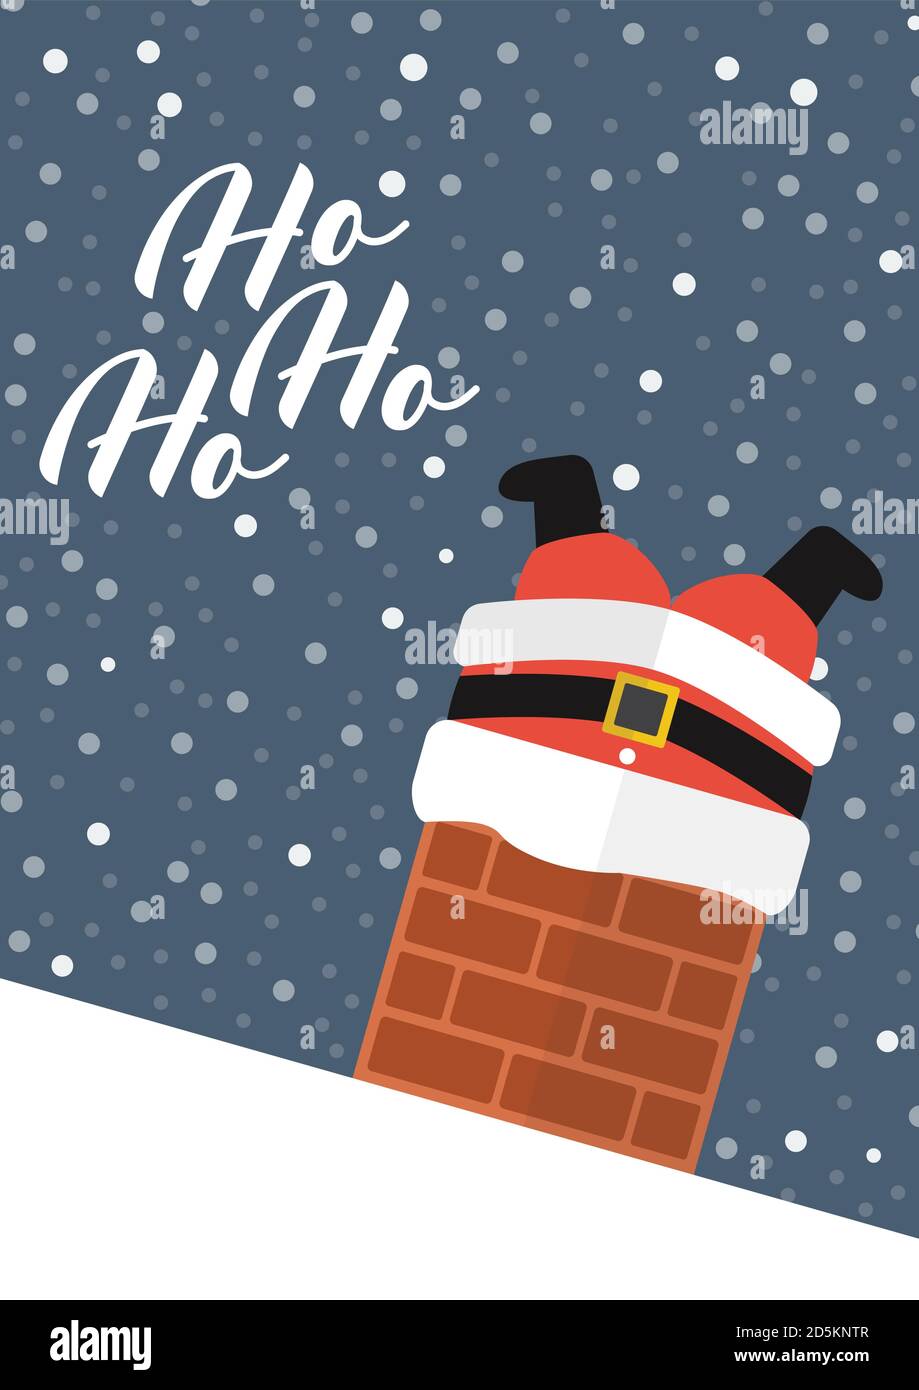 Le Père Noël a collé dans la cheminée avec le texte Ho Ho Ho Ho Ho. Affiche de carte de vœux. Illustration vectorielle Illustration de Vecteur